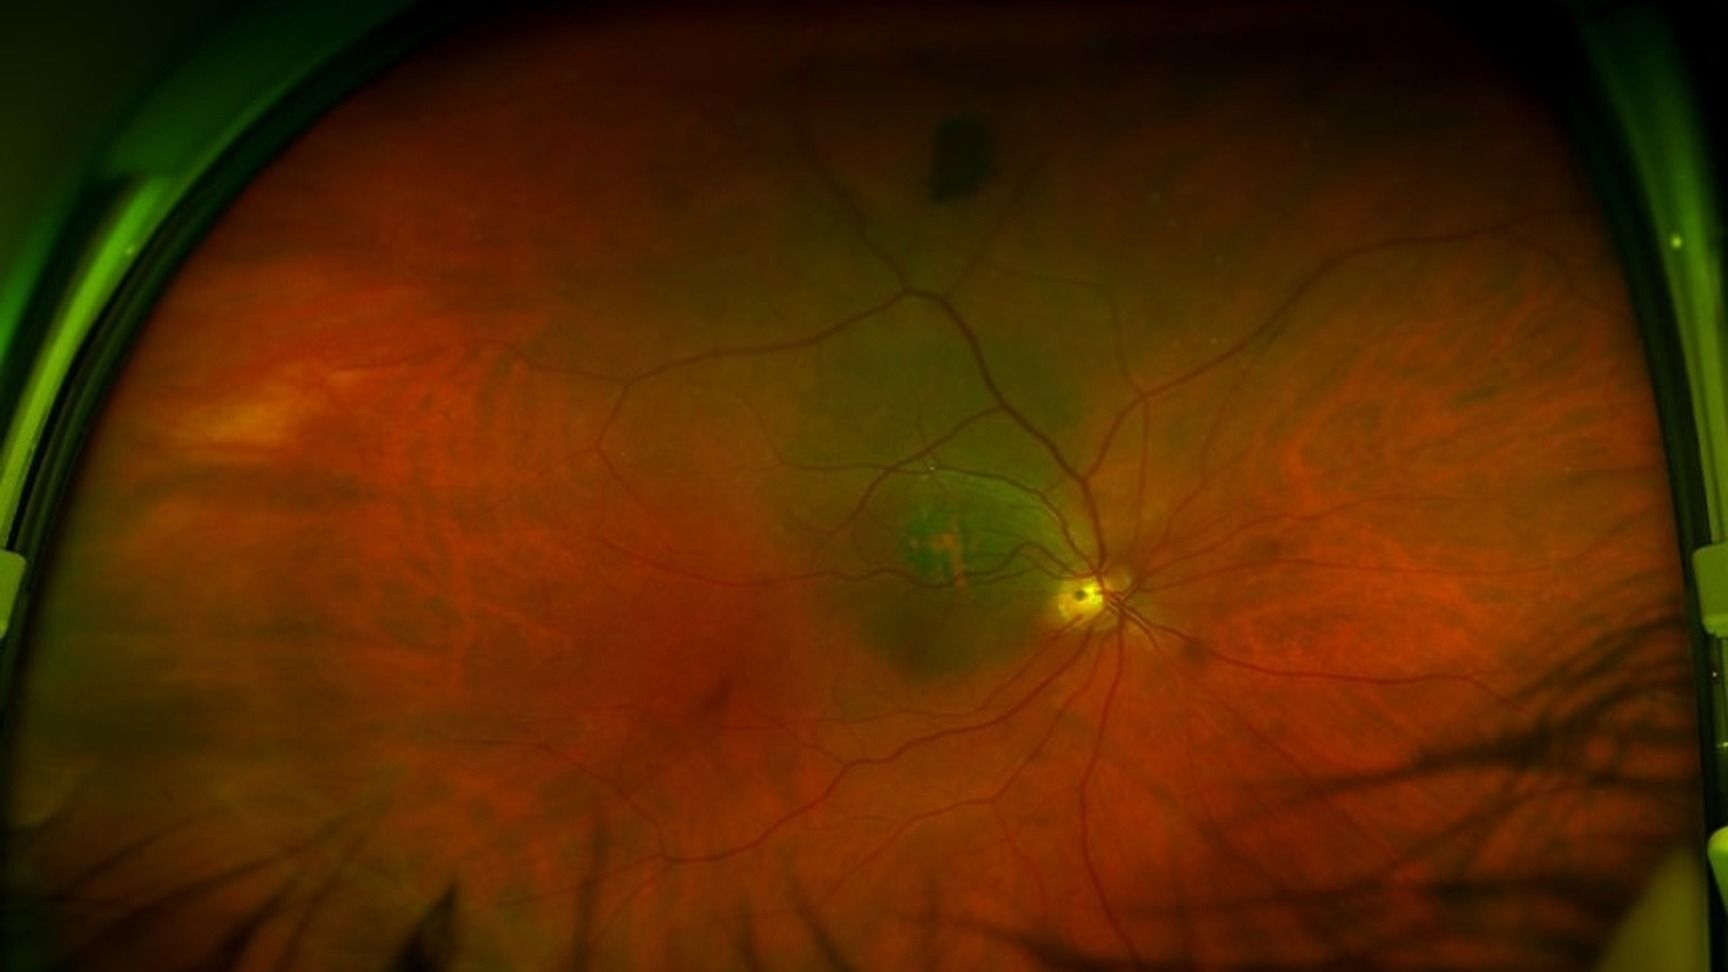 Apports de l’imagerie multimodale du segment postérieur en cancérologie oculaire